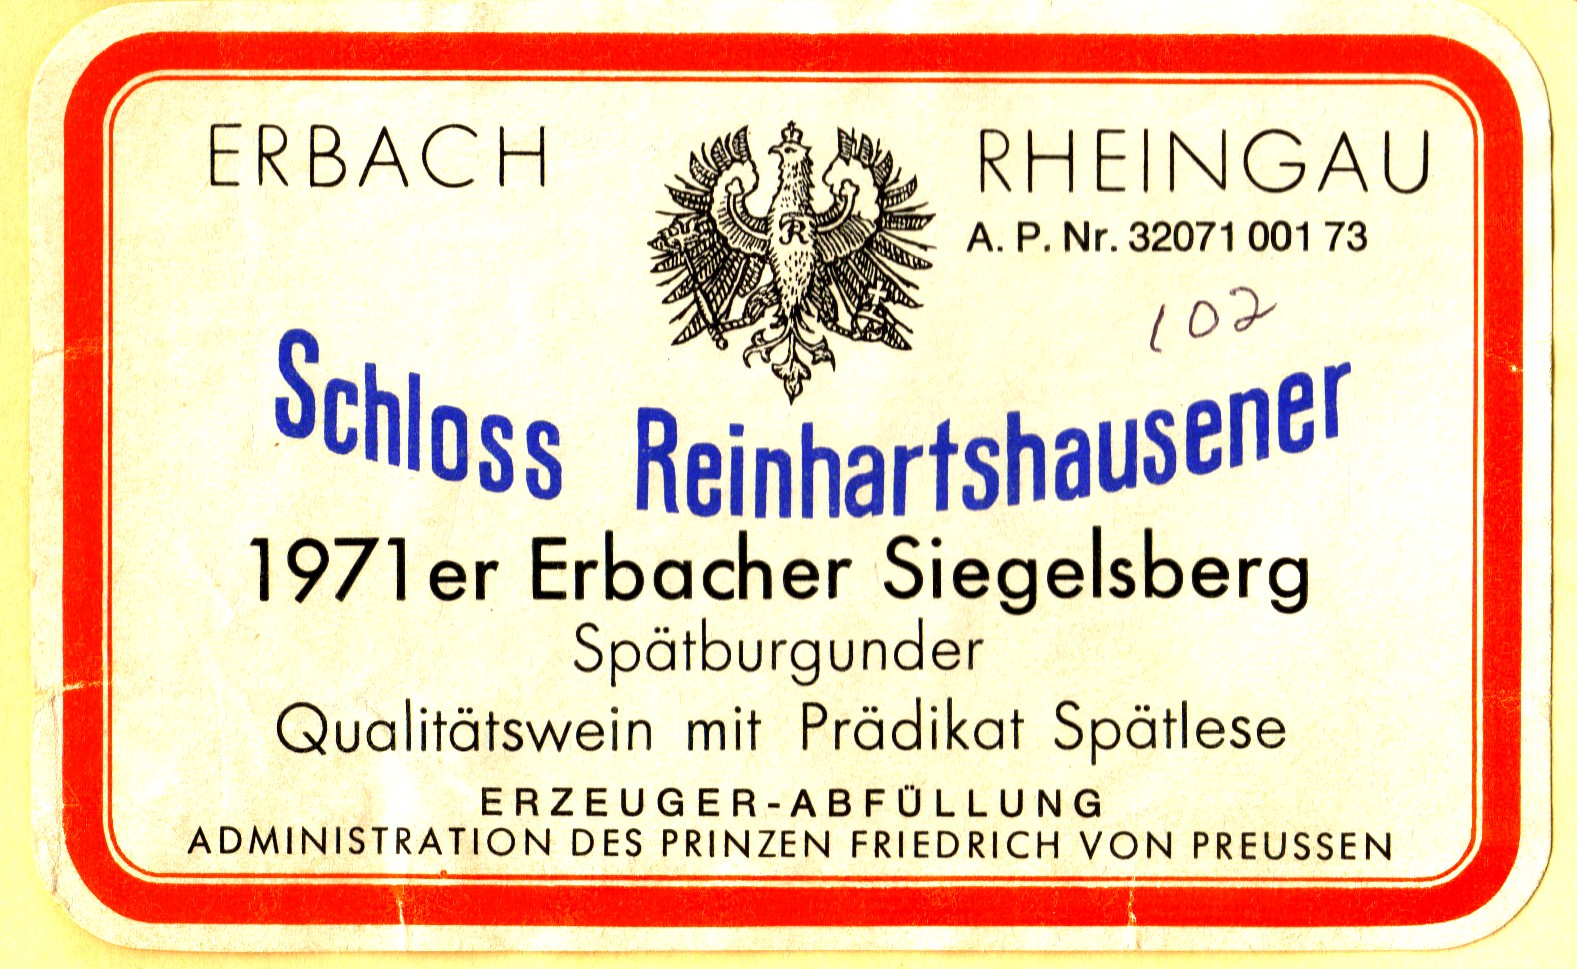 schloss-reihartshausener-1971-erbacher-siegelsberg-spatburgunder-spatlese.jpg